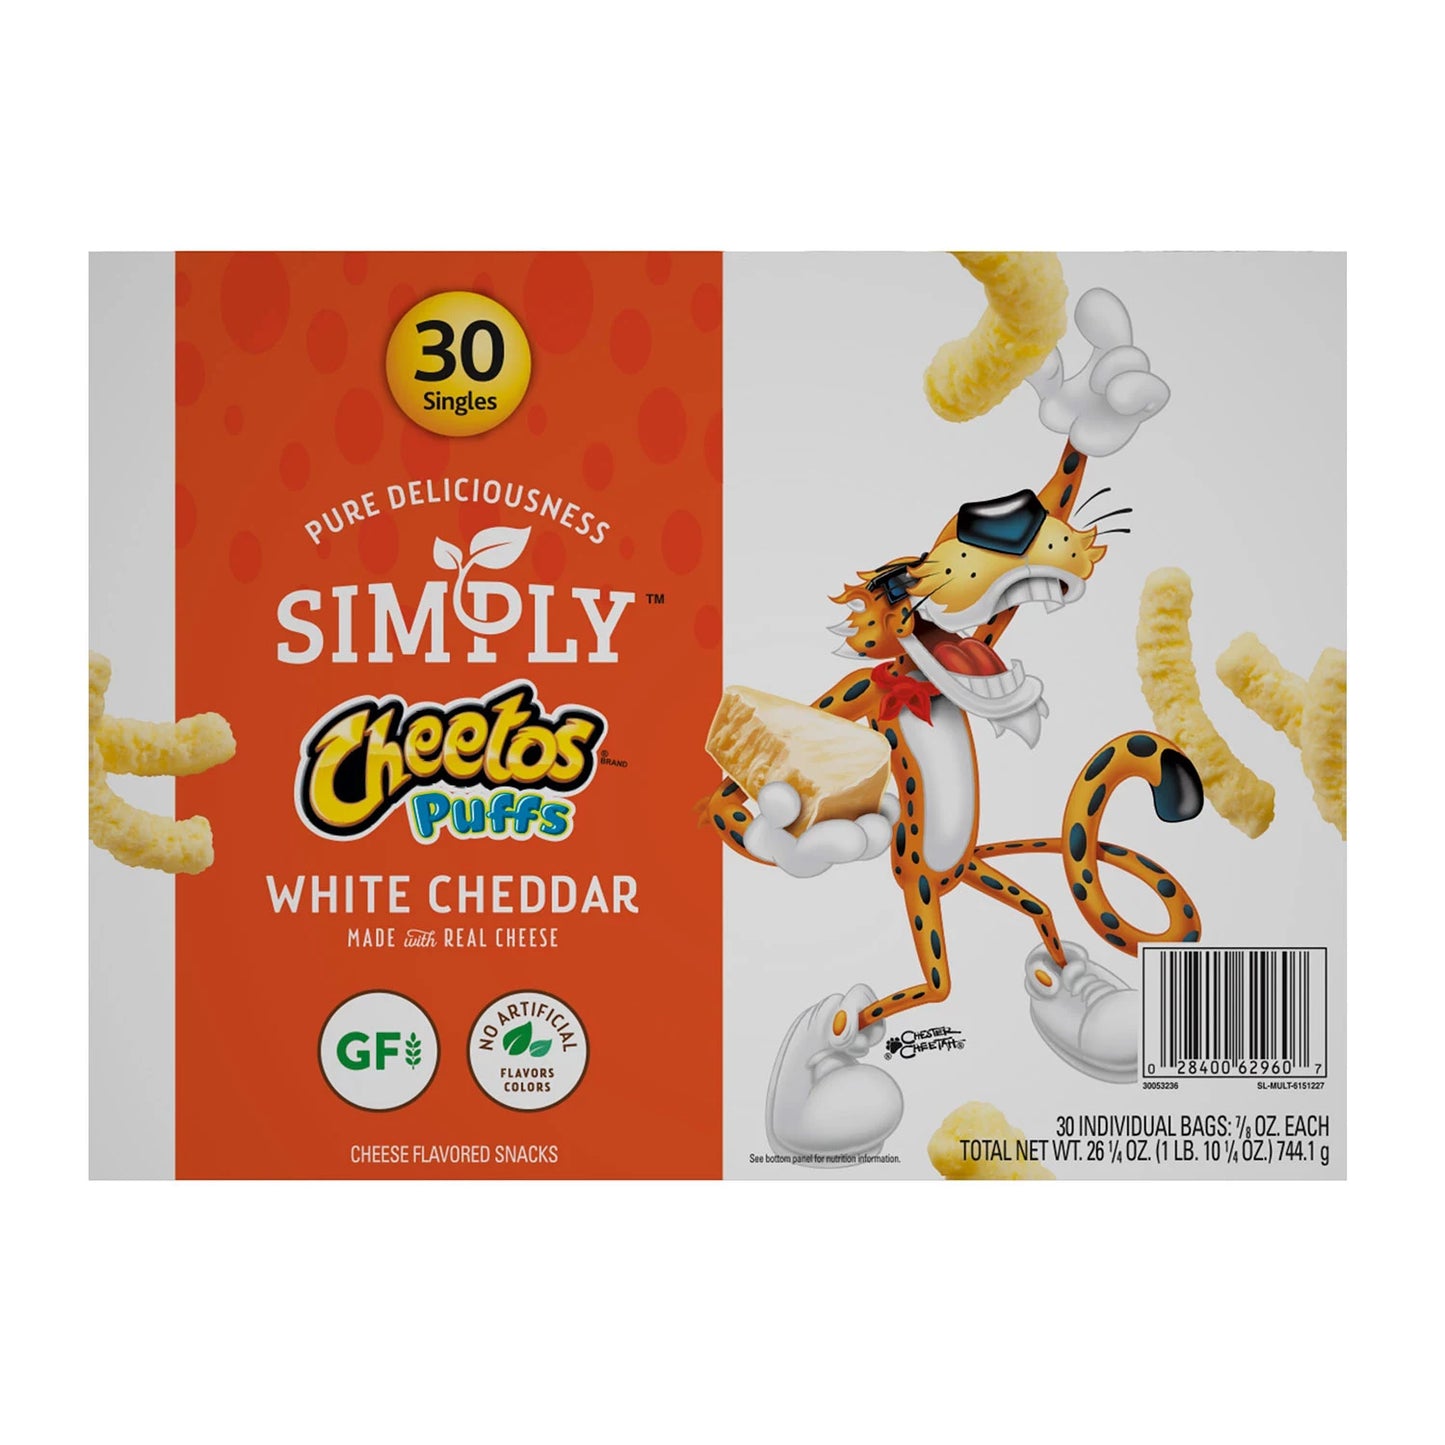 Simply Cheetos Puffs White Cheddar (30 bags)